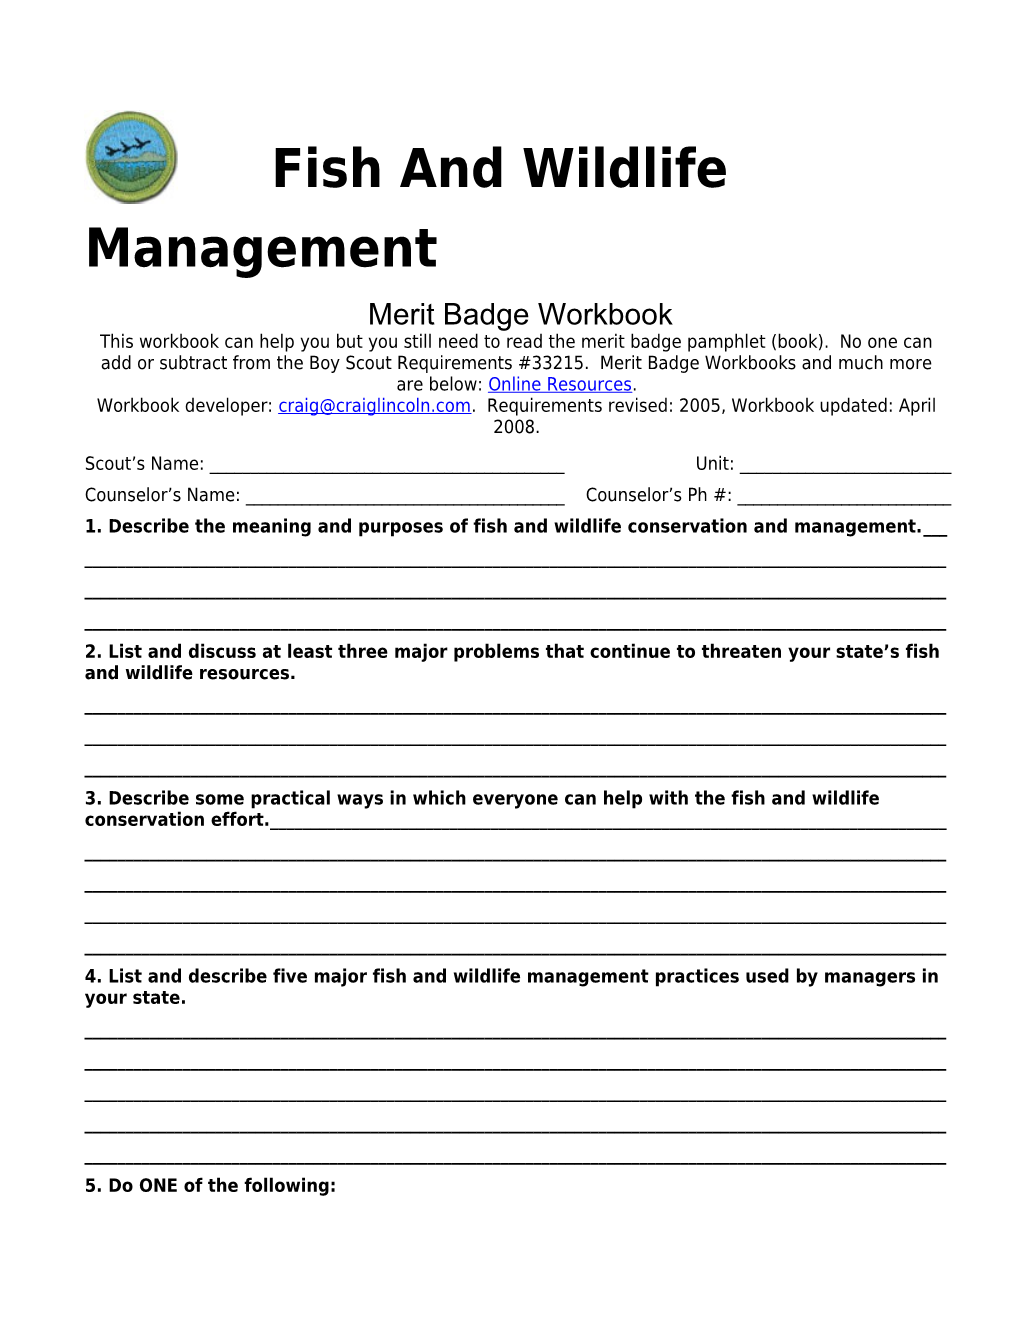 Fish & Wildlife Management